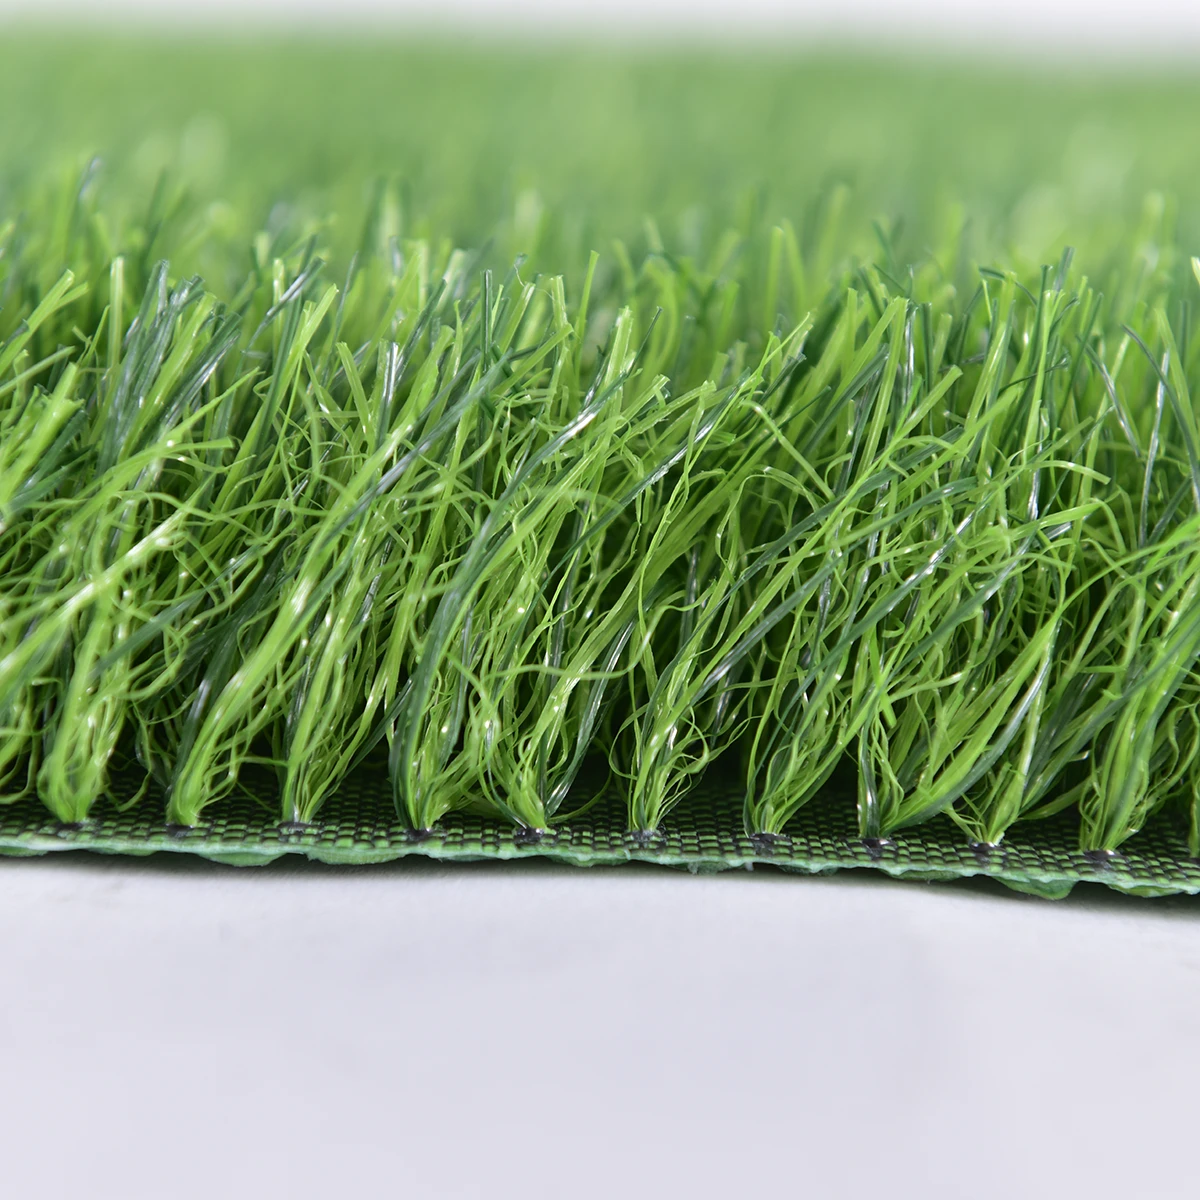 Artificial Grass Artificial Carpet Grass Soccer Synthetic Turf Landscaping PP+MESH+SBR 20-40mm 500 Sqm Binteng 8800D BT103 PP+PE